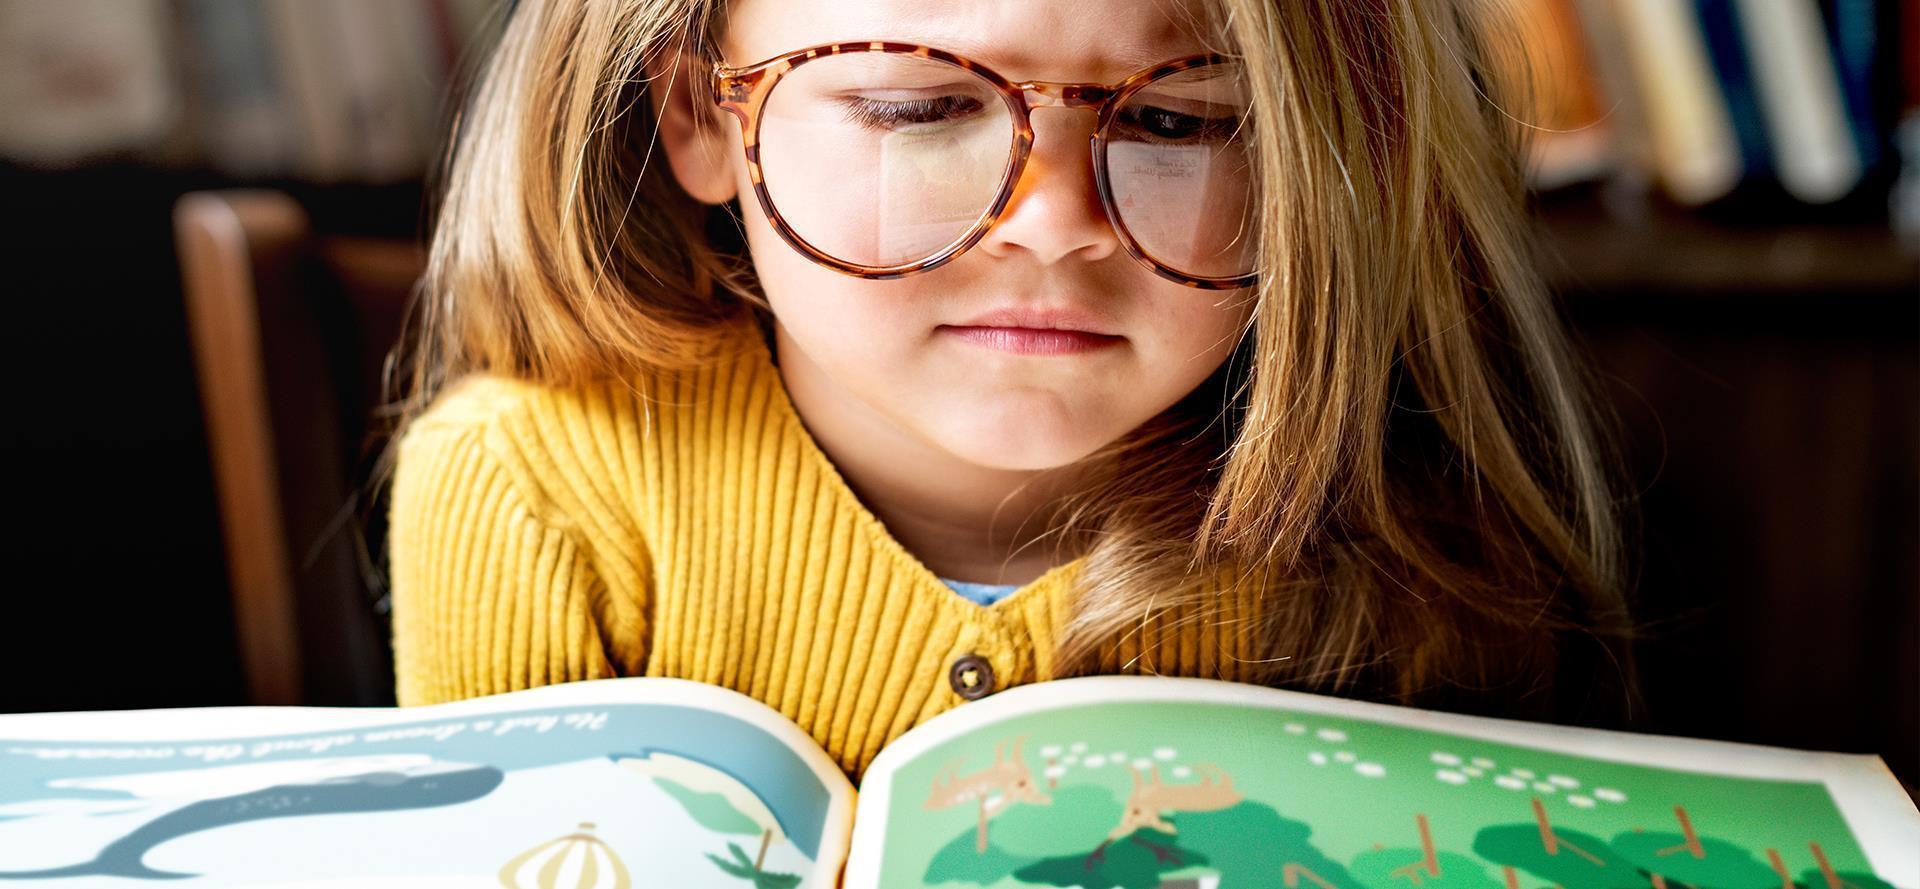 Egy friss kutatás szerint az amerikaiak több mint fele azért olvas, hogy okosabbnak tűnjön